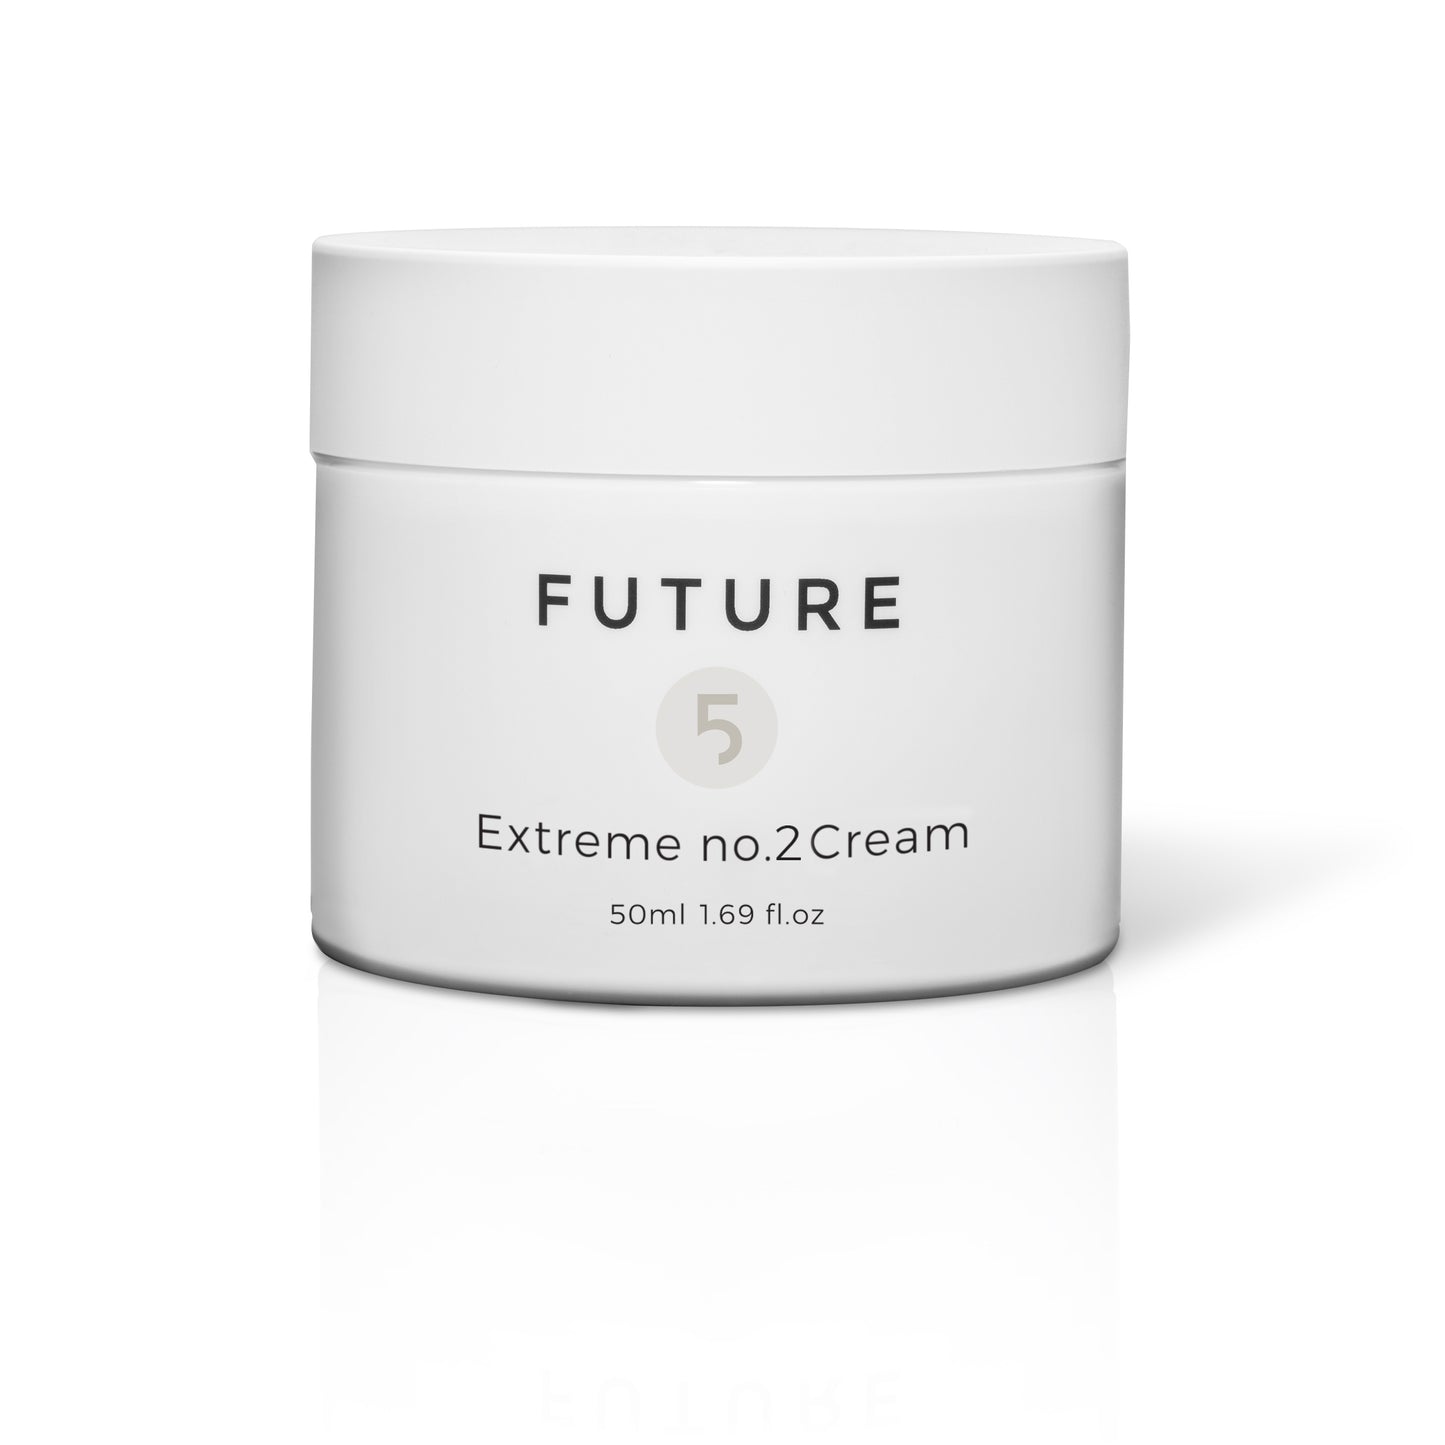 Extreme no. 2 Cream